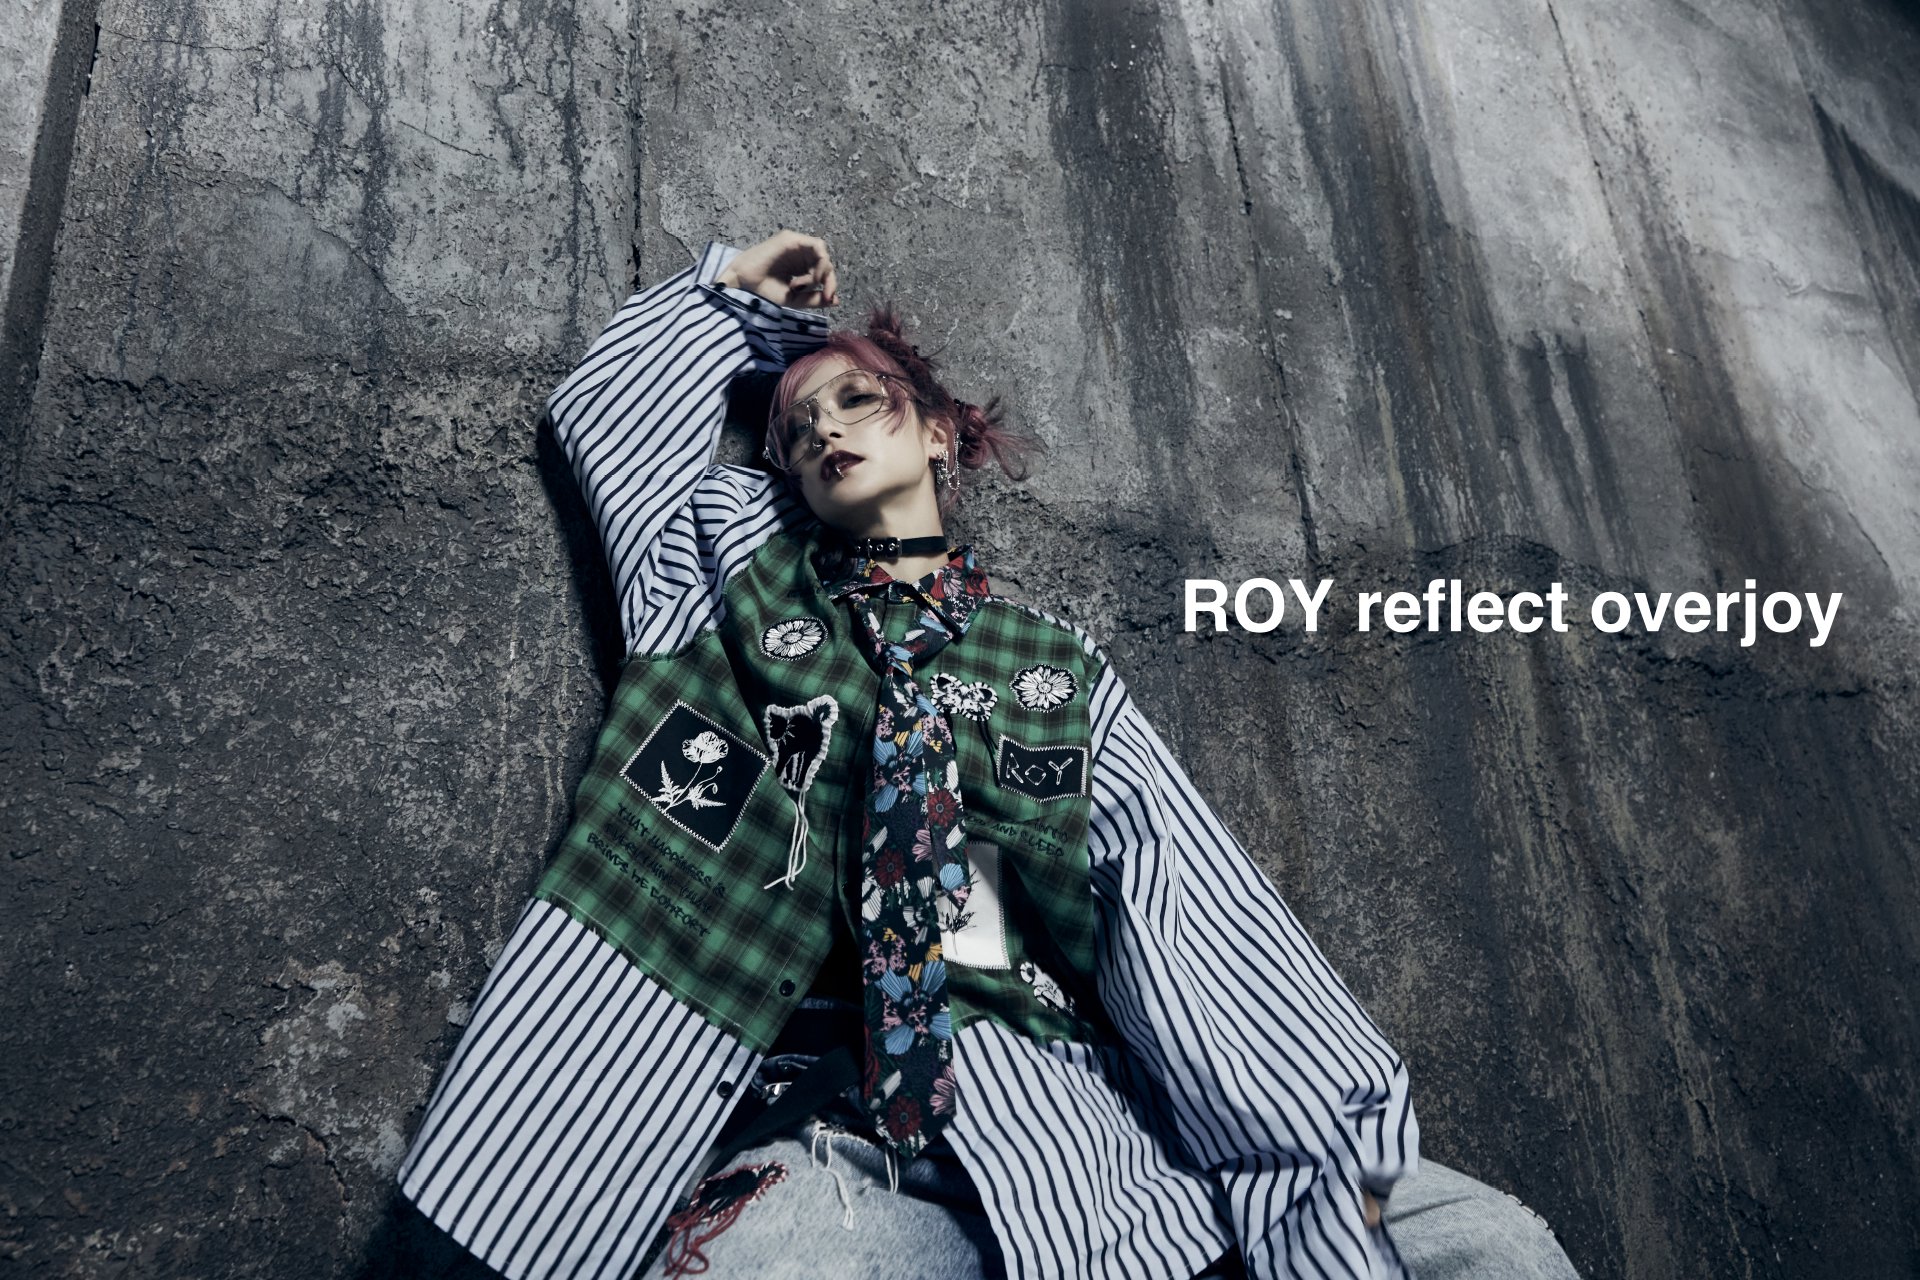 ROY reflect overjoy